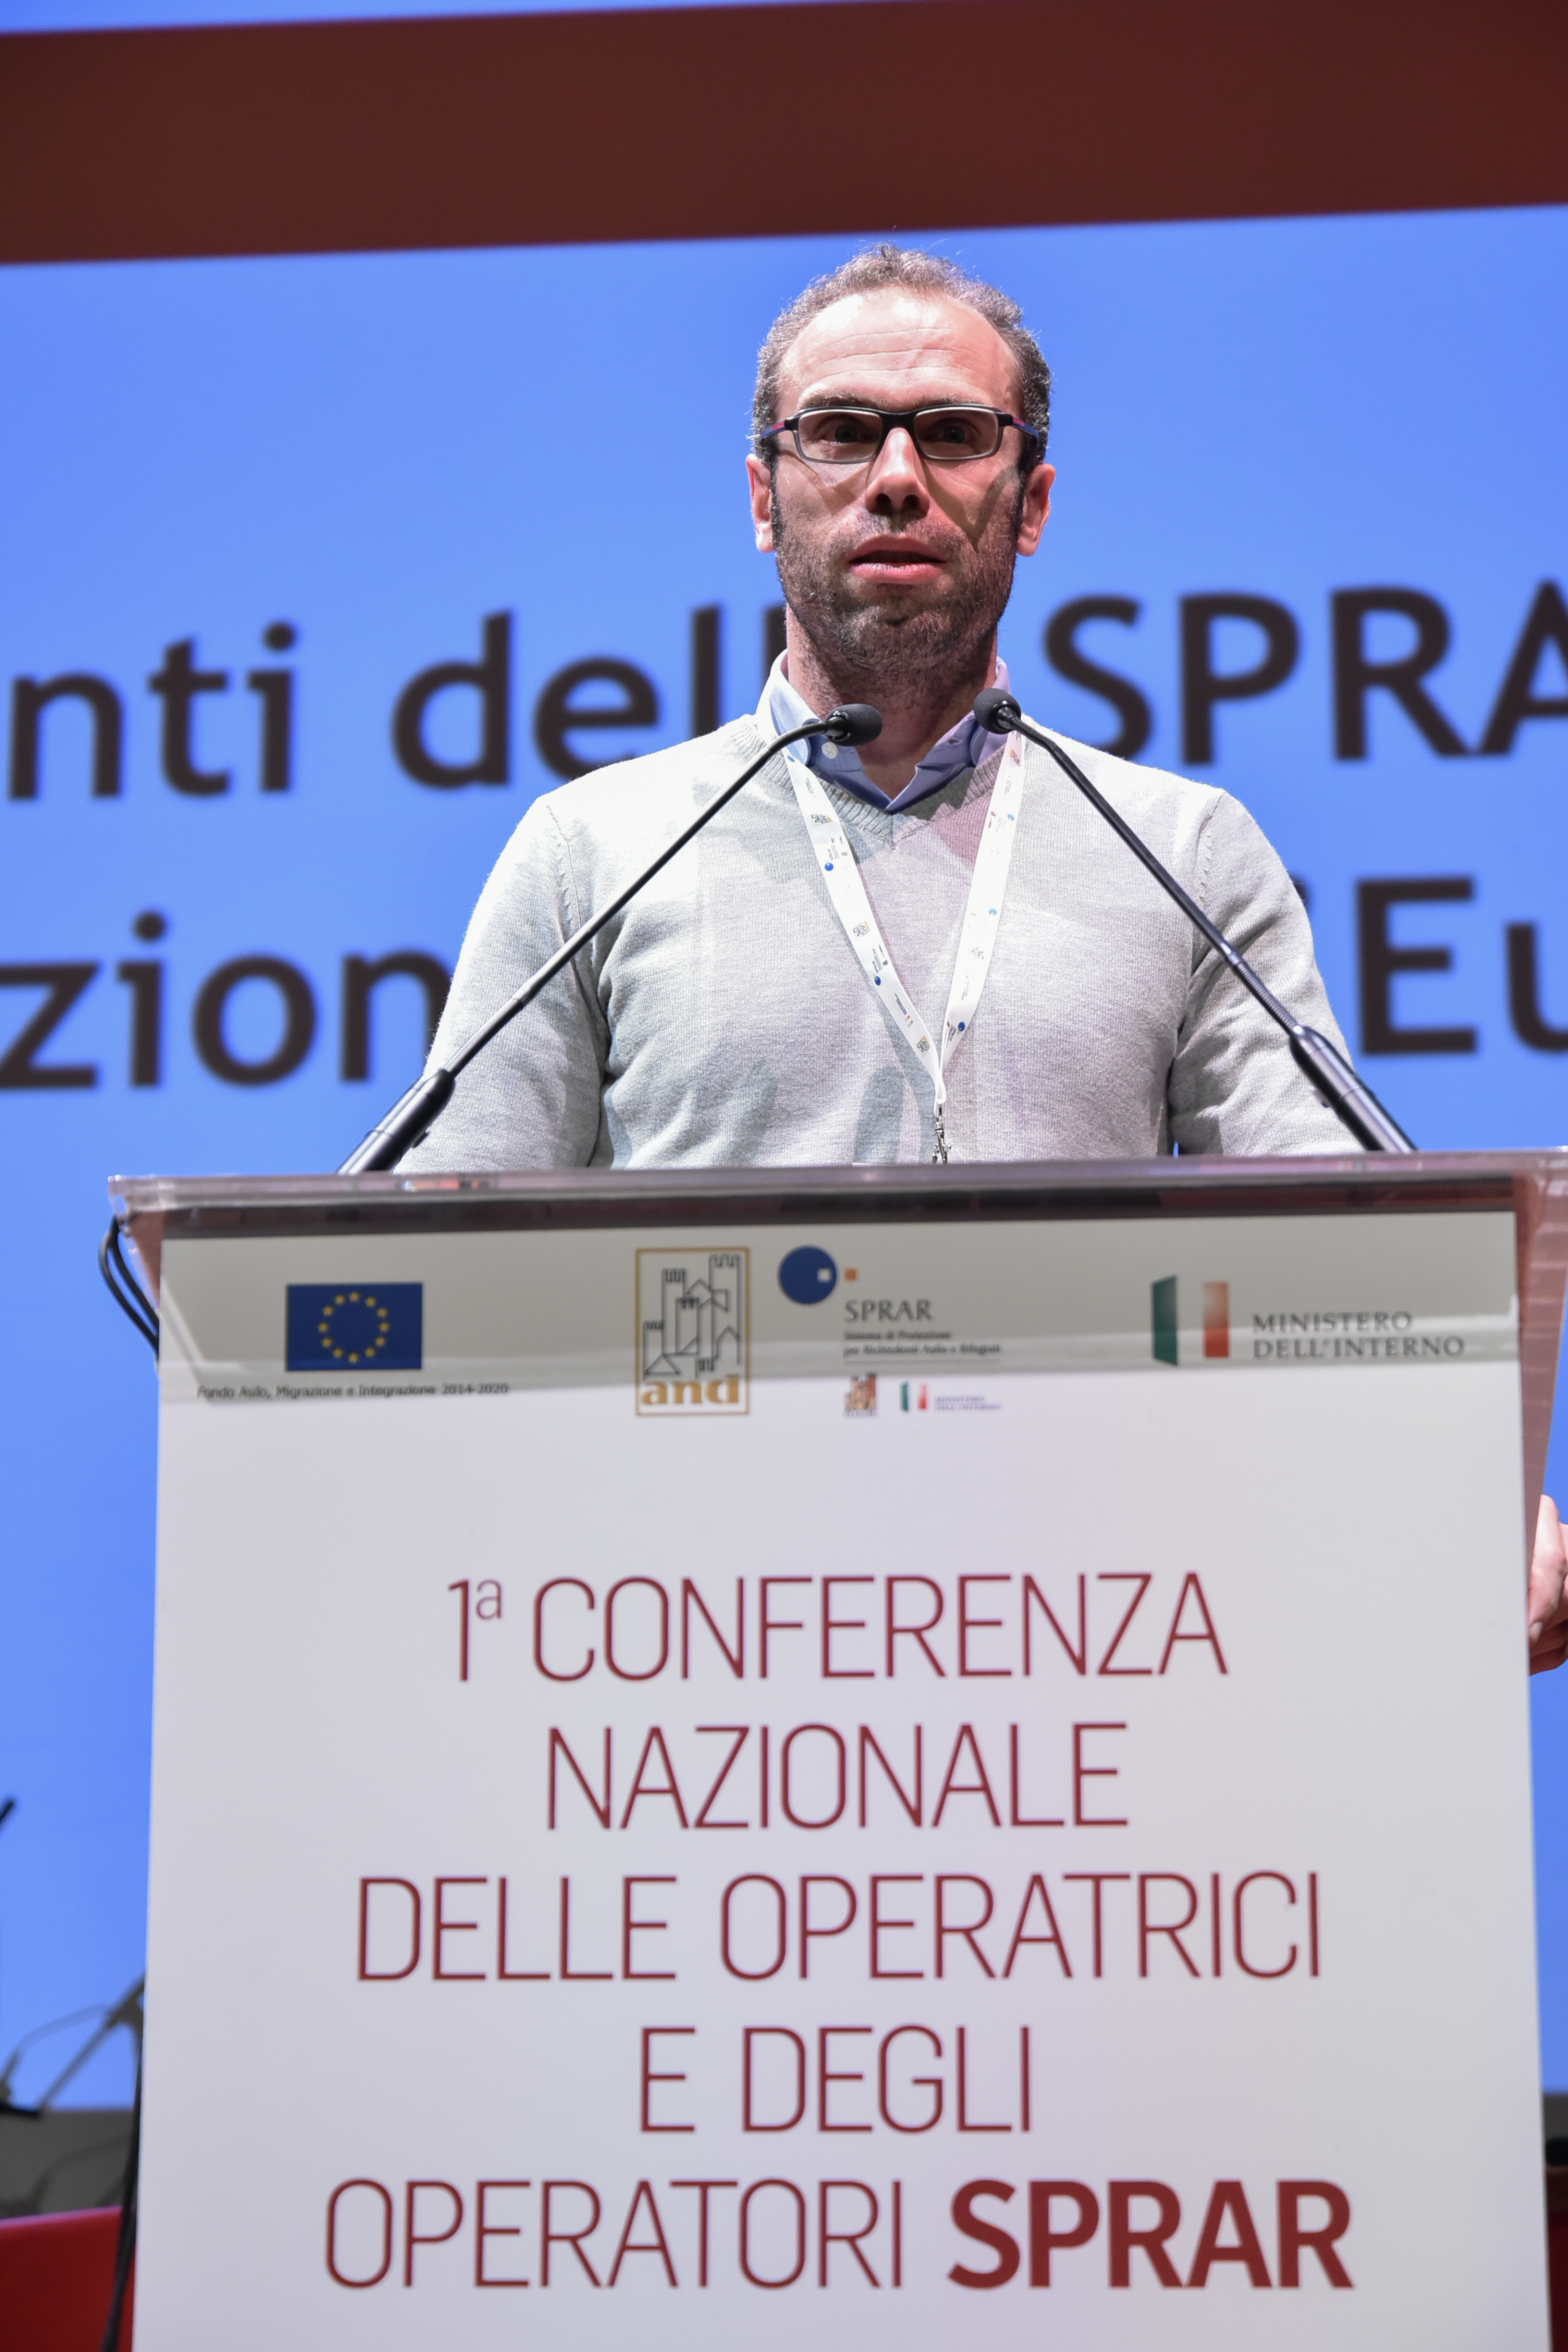 https://www.sprar.it/conferenza-nazionale-sprar/wp-content/uploads/2018/08/4-Isetta.jpg